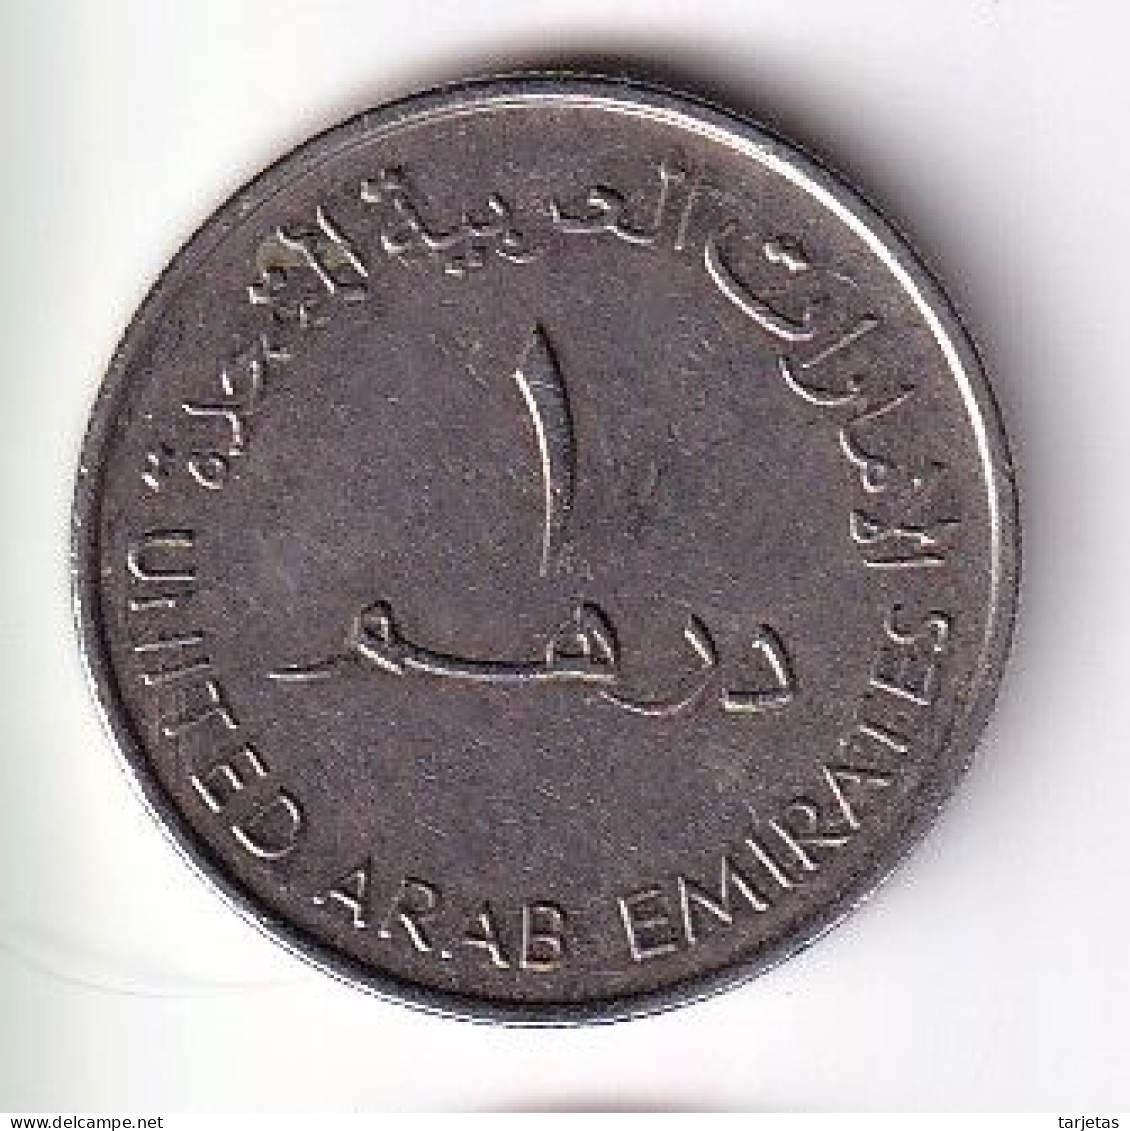 MONEDA DE EMIRATOS ARABES DE 1 DIRHAM DEL AÑO 2010 - I LOVE UAE (COIN) - Emiratos Arabes